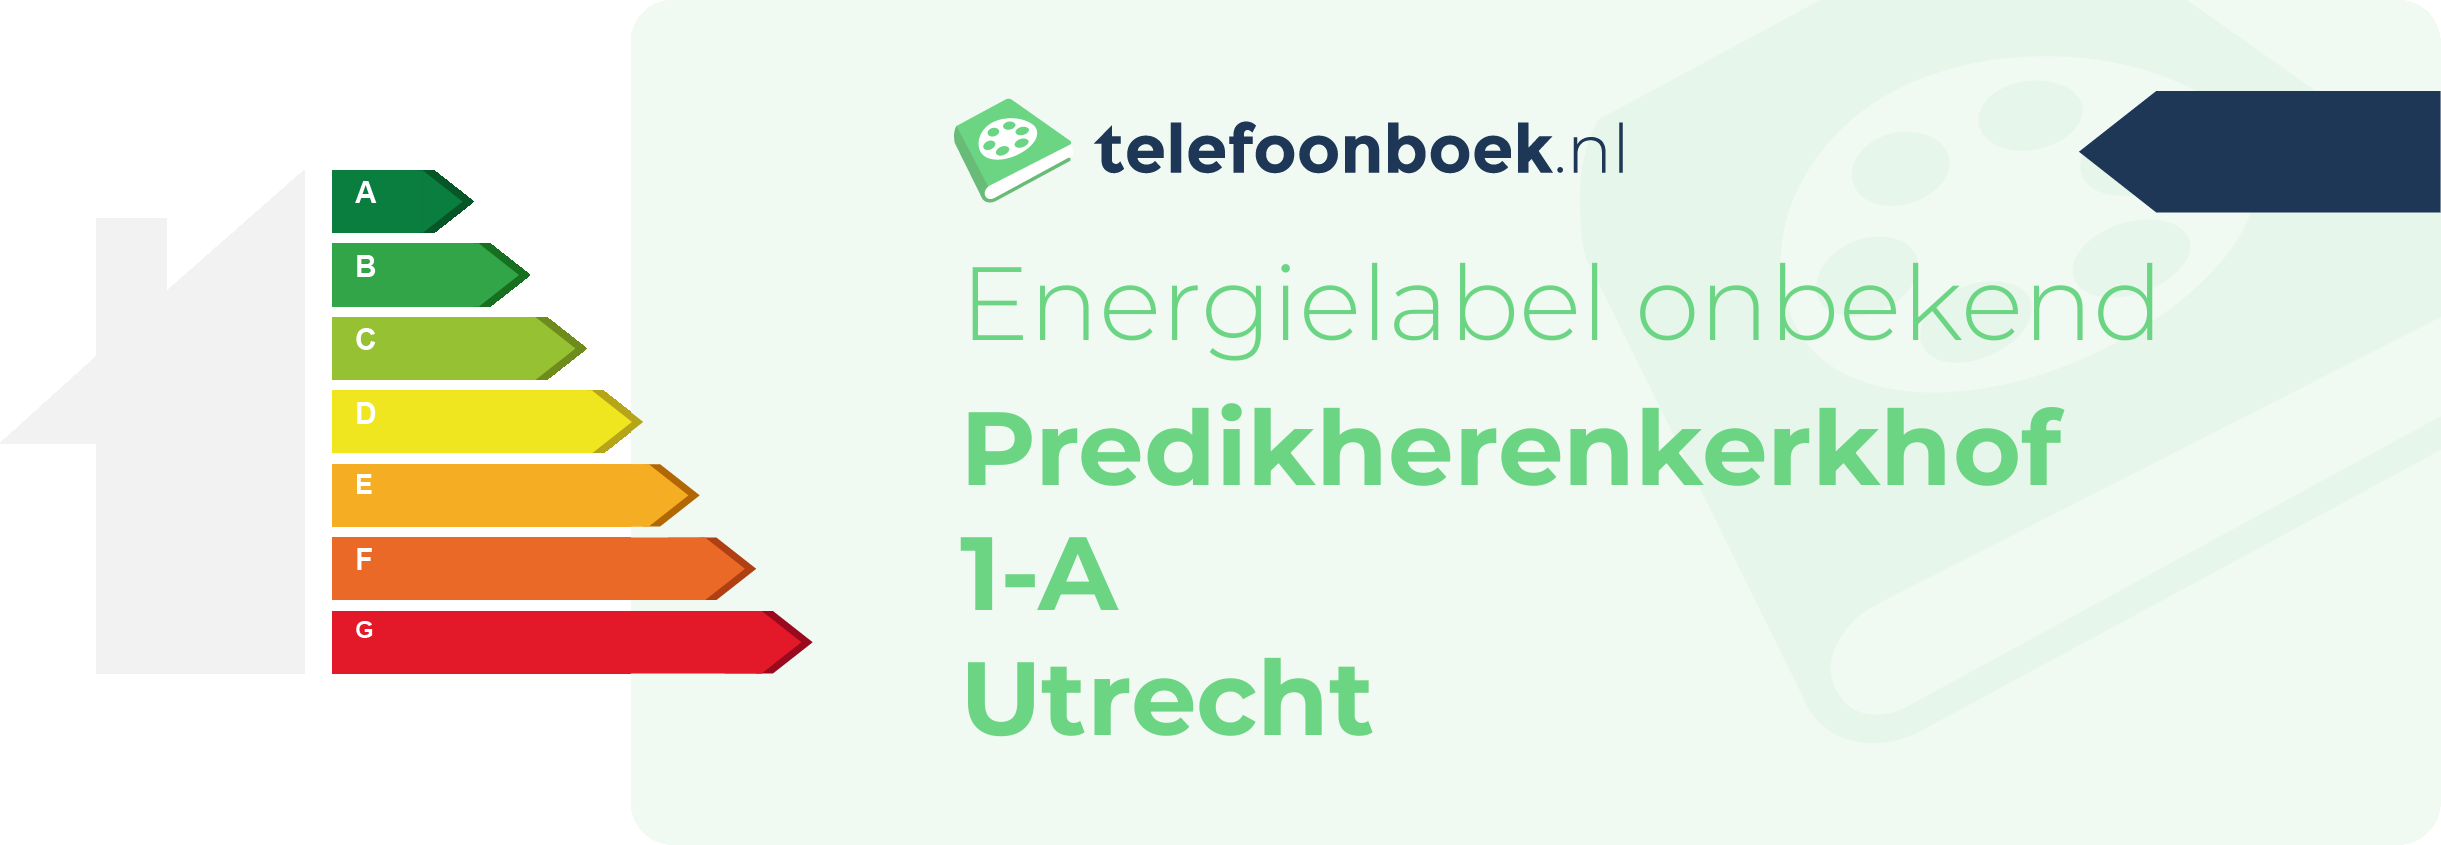 Energielabel Predikherenkerkhof 1-A Utrecht